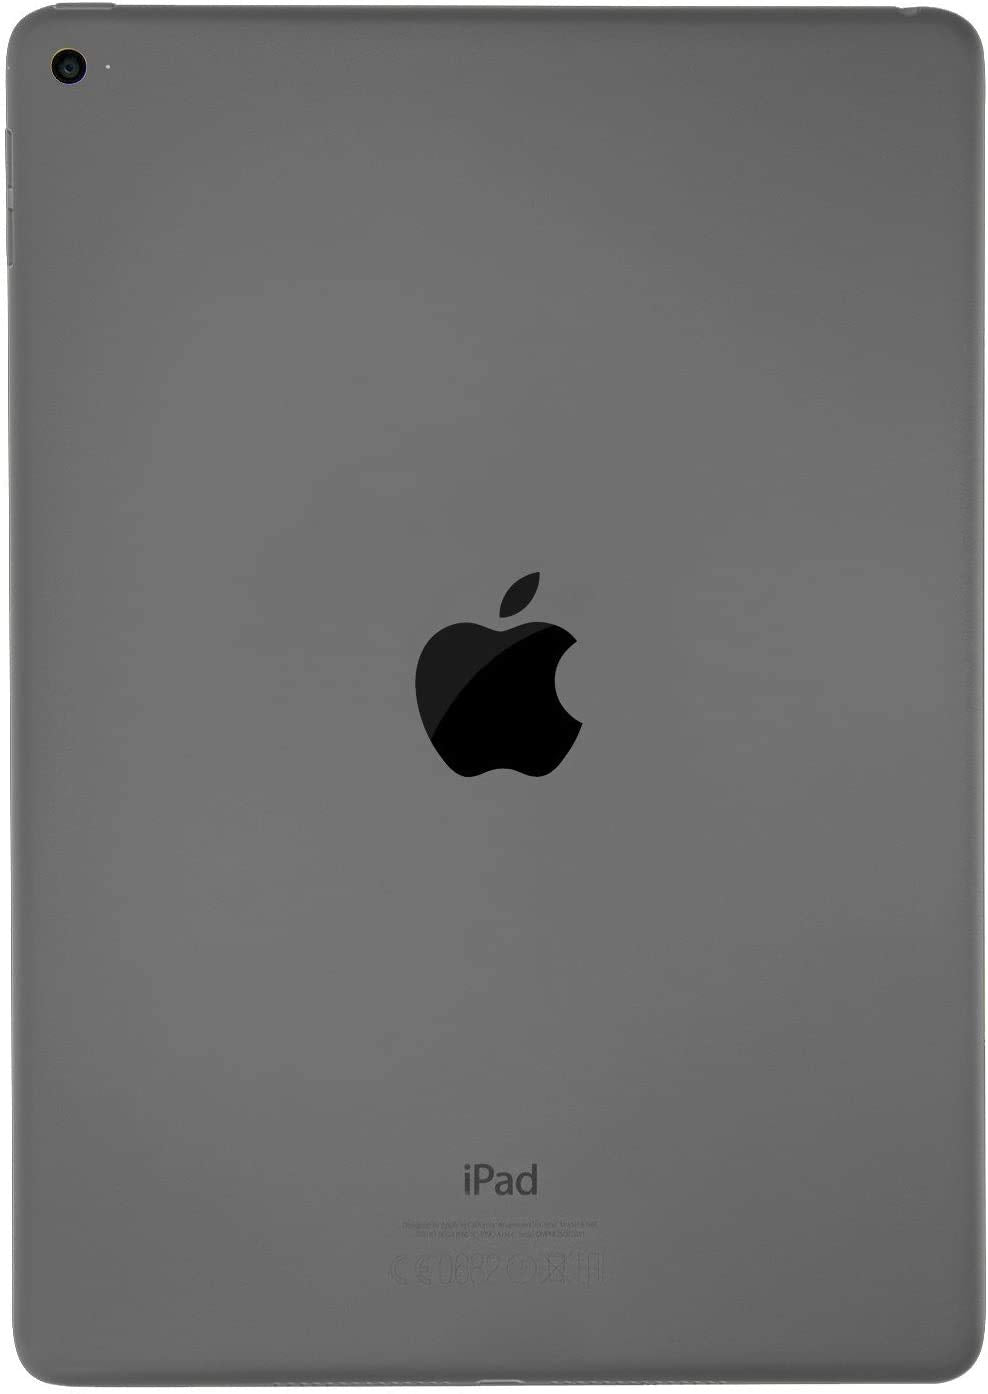 Apple iPad Air 2 16GB Wi-Fi - Space Grey (Renewed)